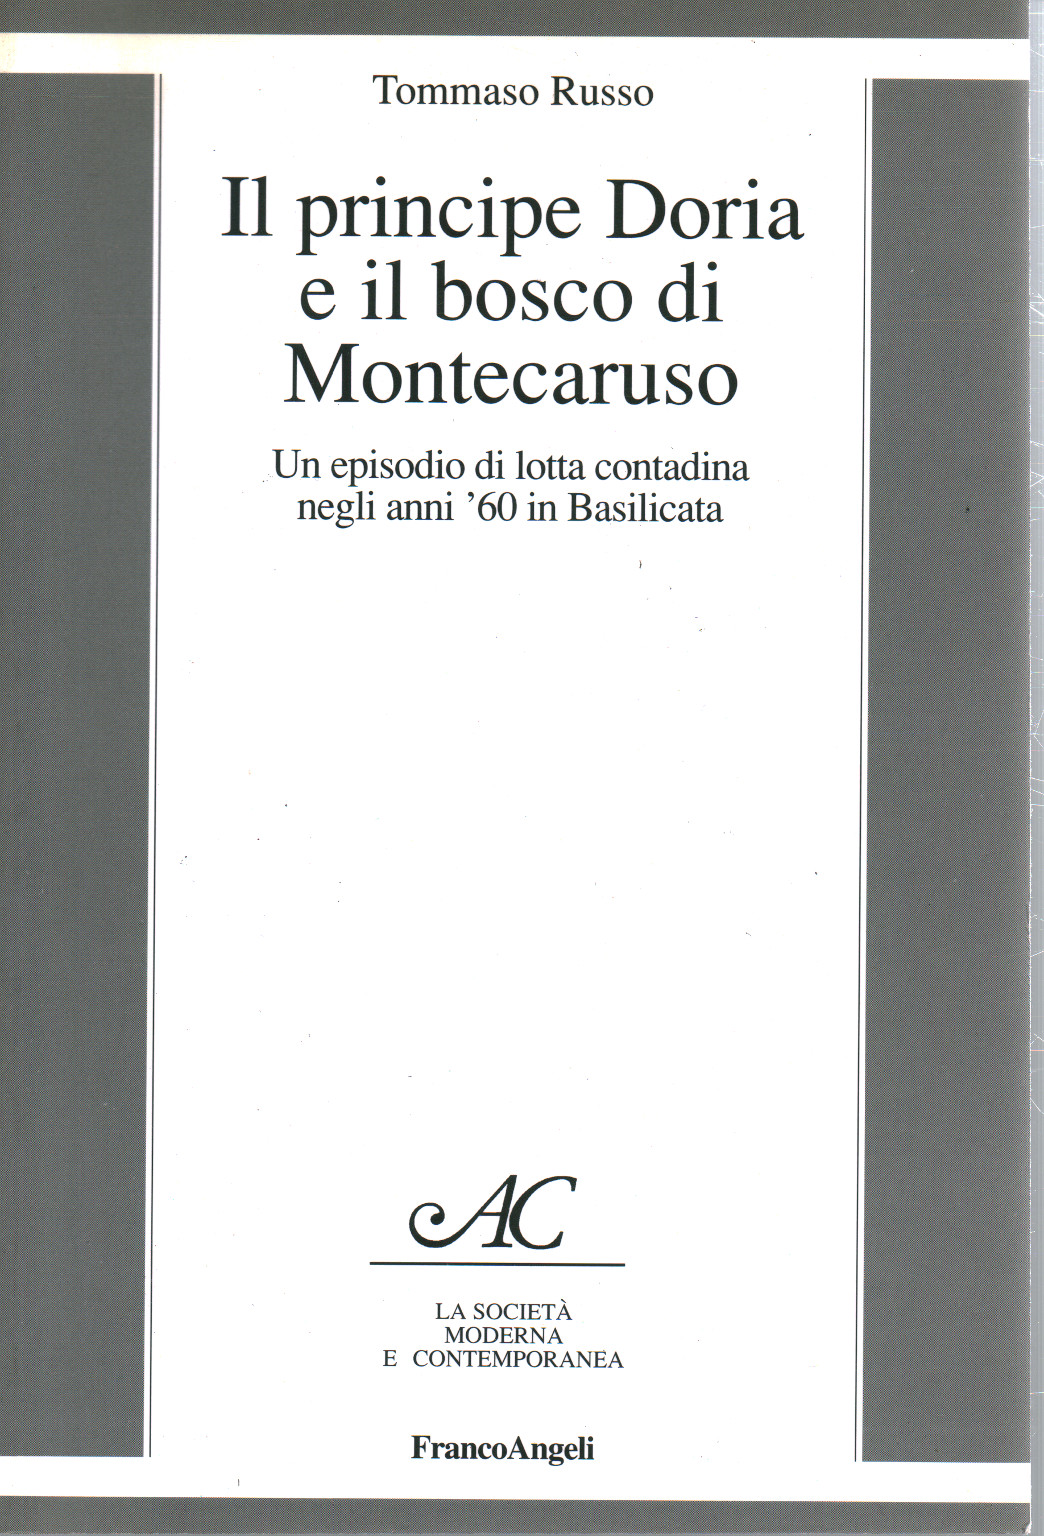 Il principe Doria e il bosco di Montecaruso, s.a.